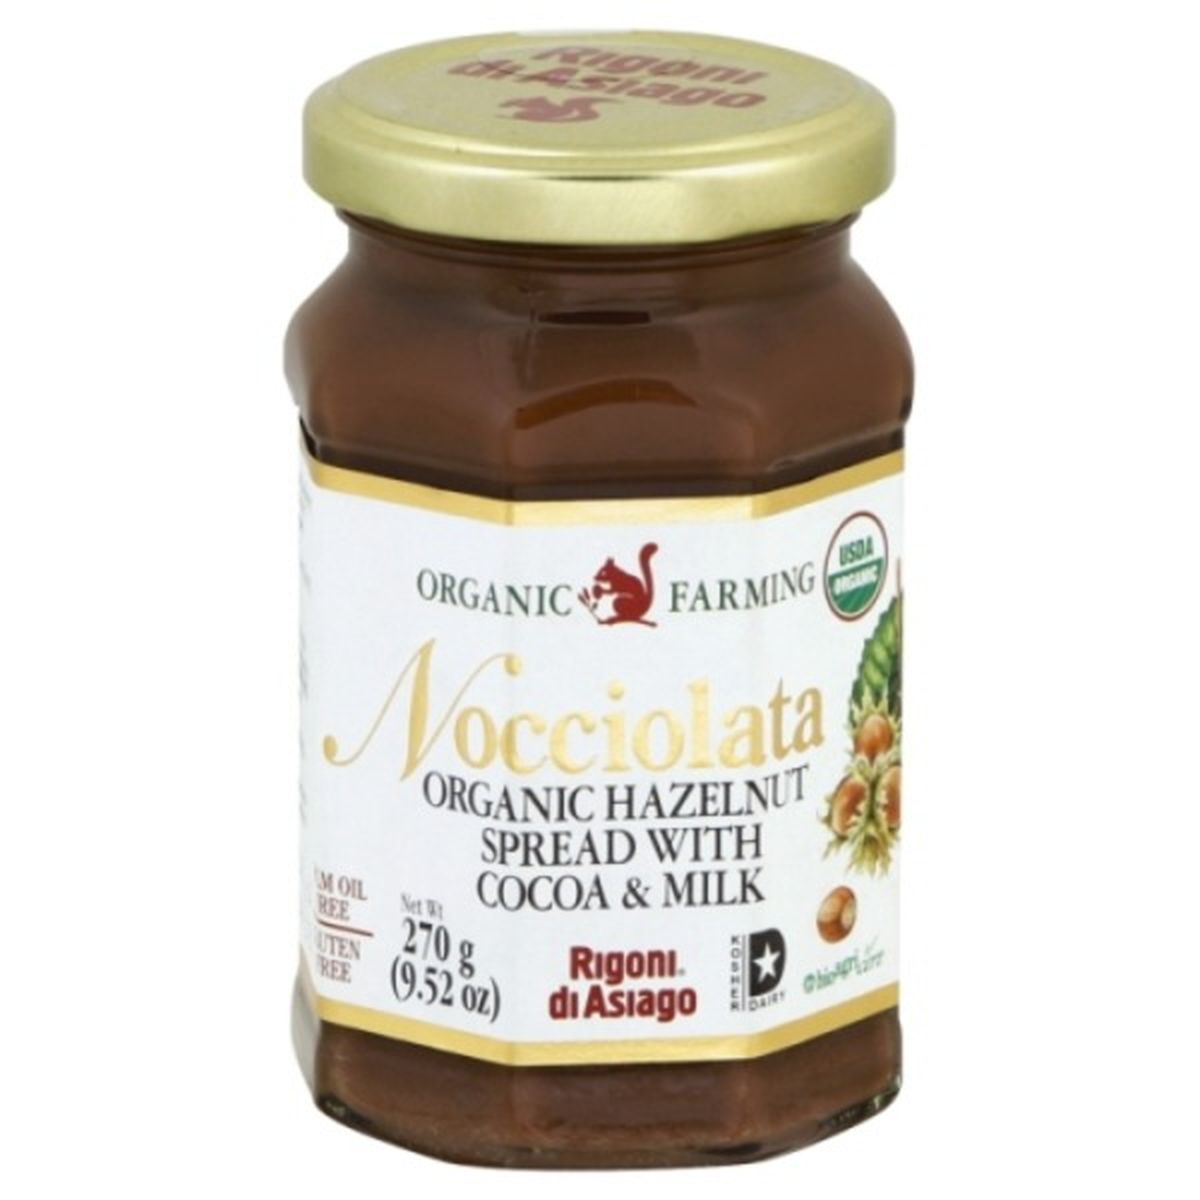 Calories in Rigoni di Asiago Hazelnut Spread, Organic, with Cocoa & Milk